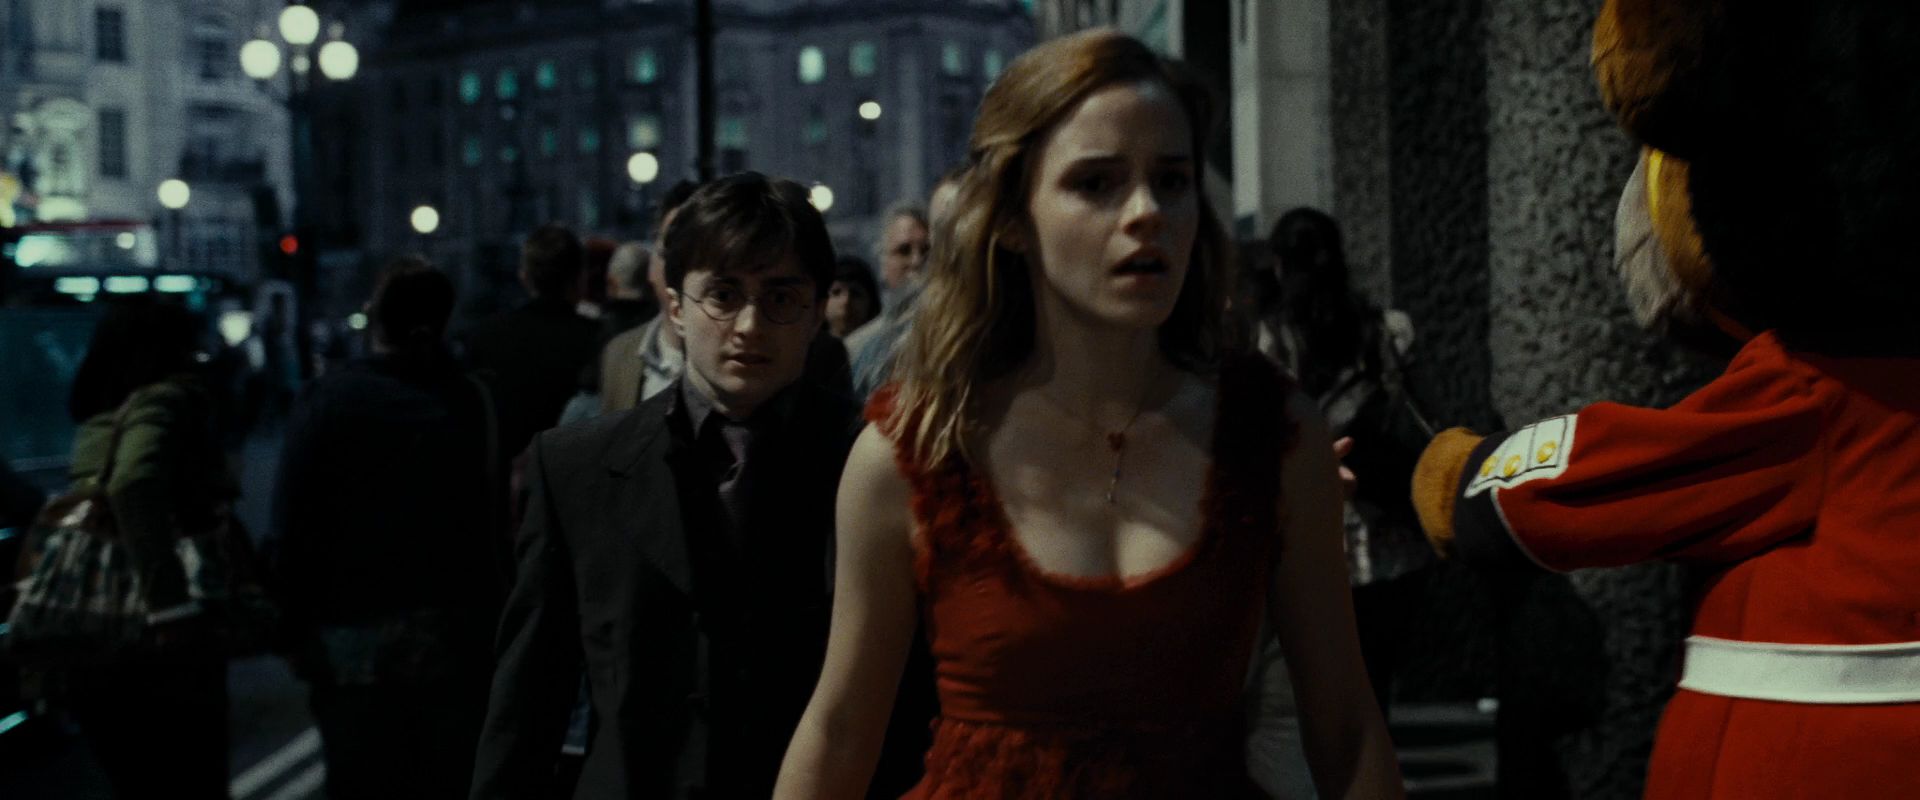 Гермиона Грейнджер Photo: Hermione in Red Dress.